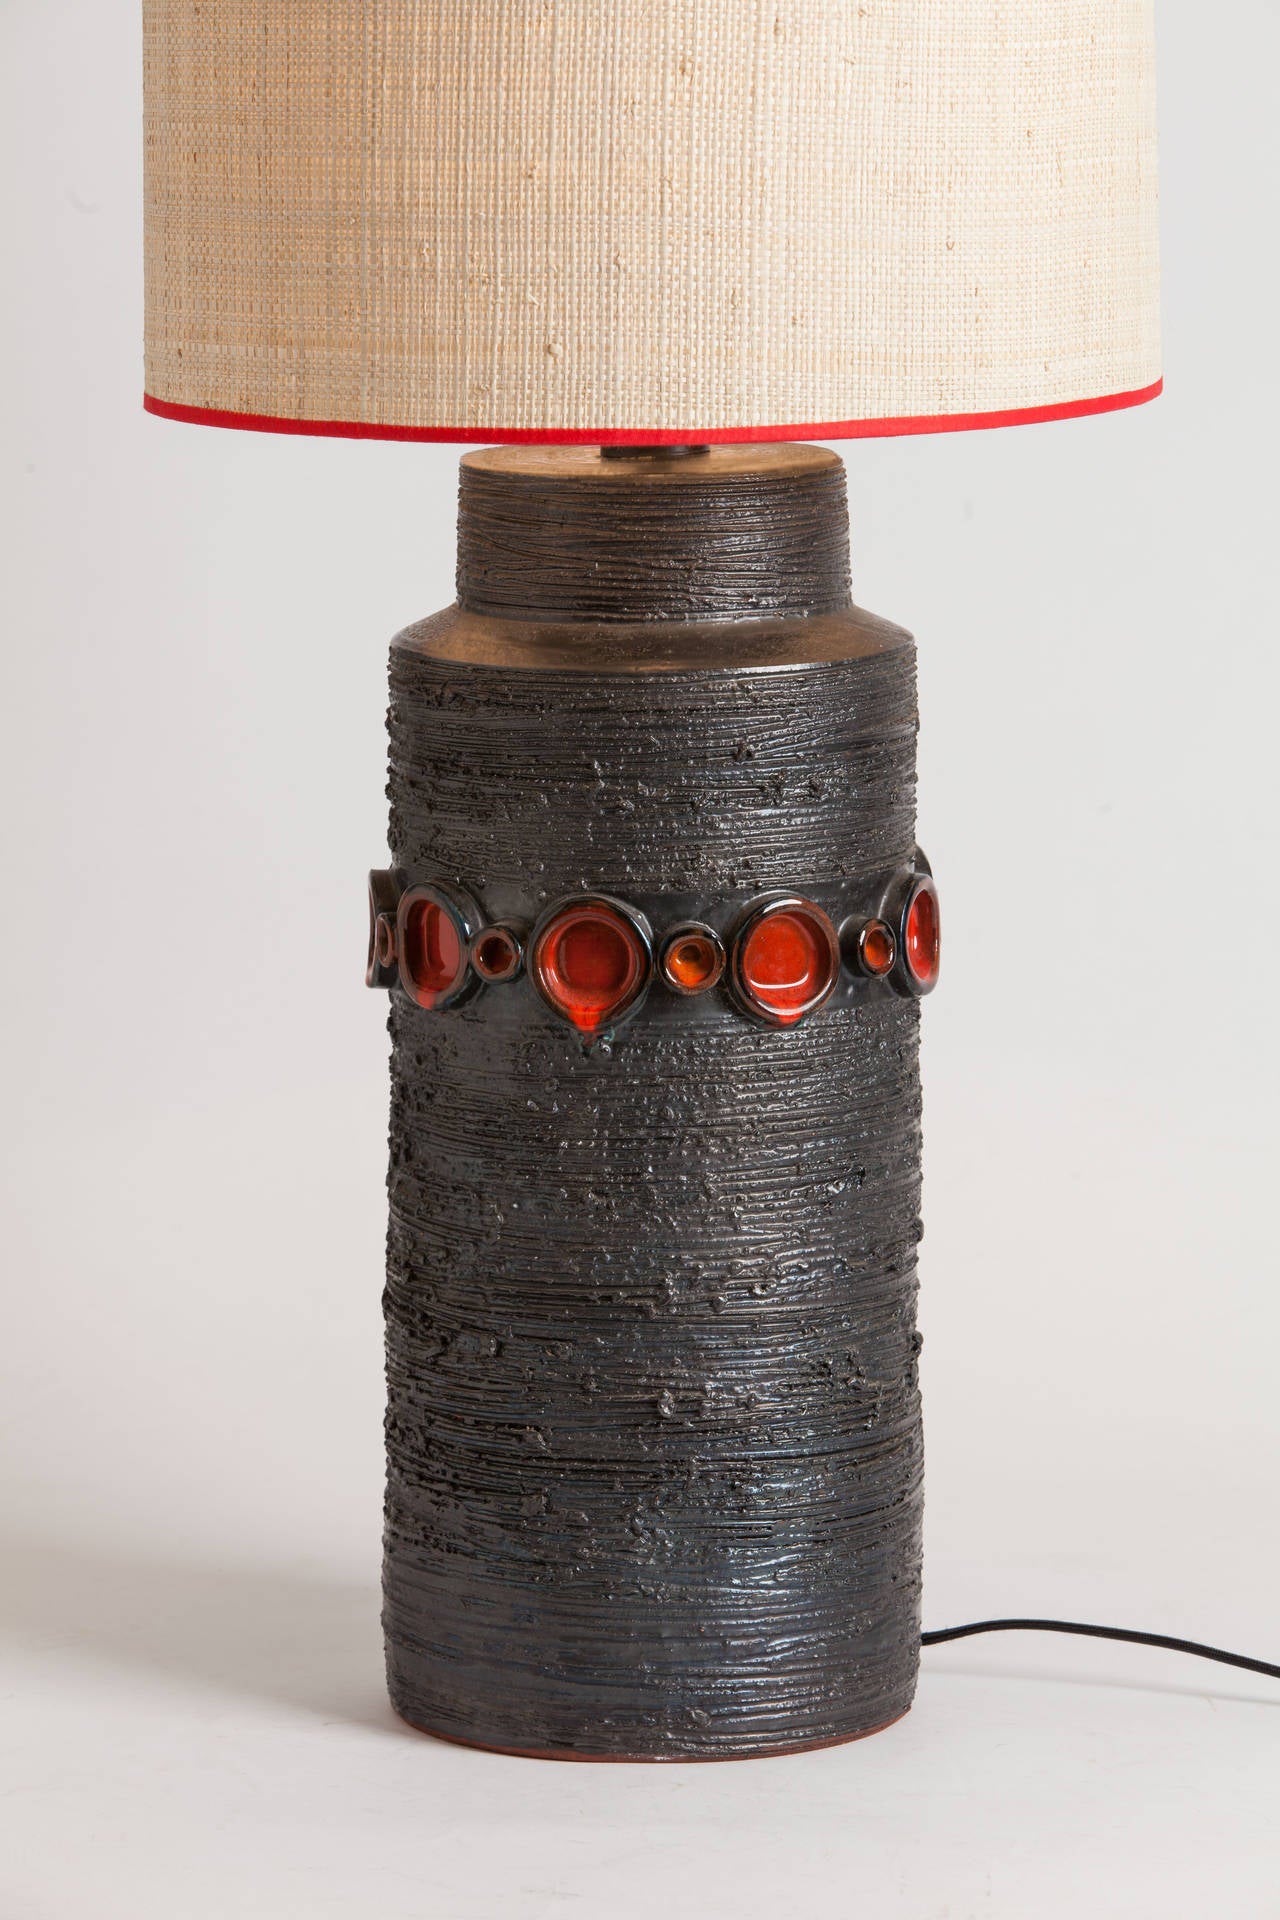 Belgian Ceramic Table Lamp by Perignem